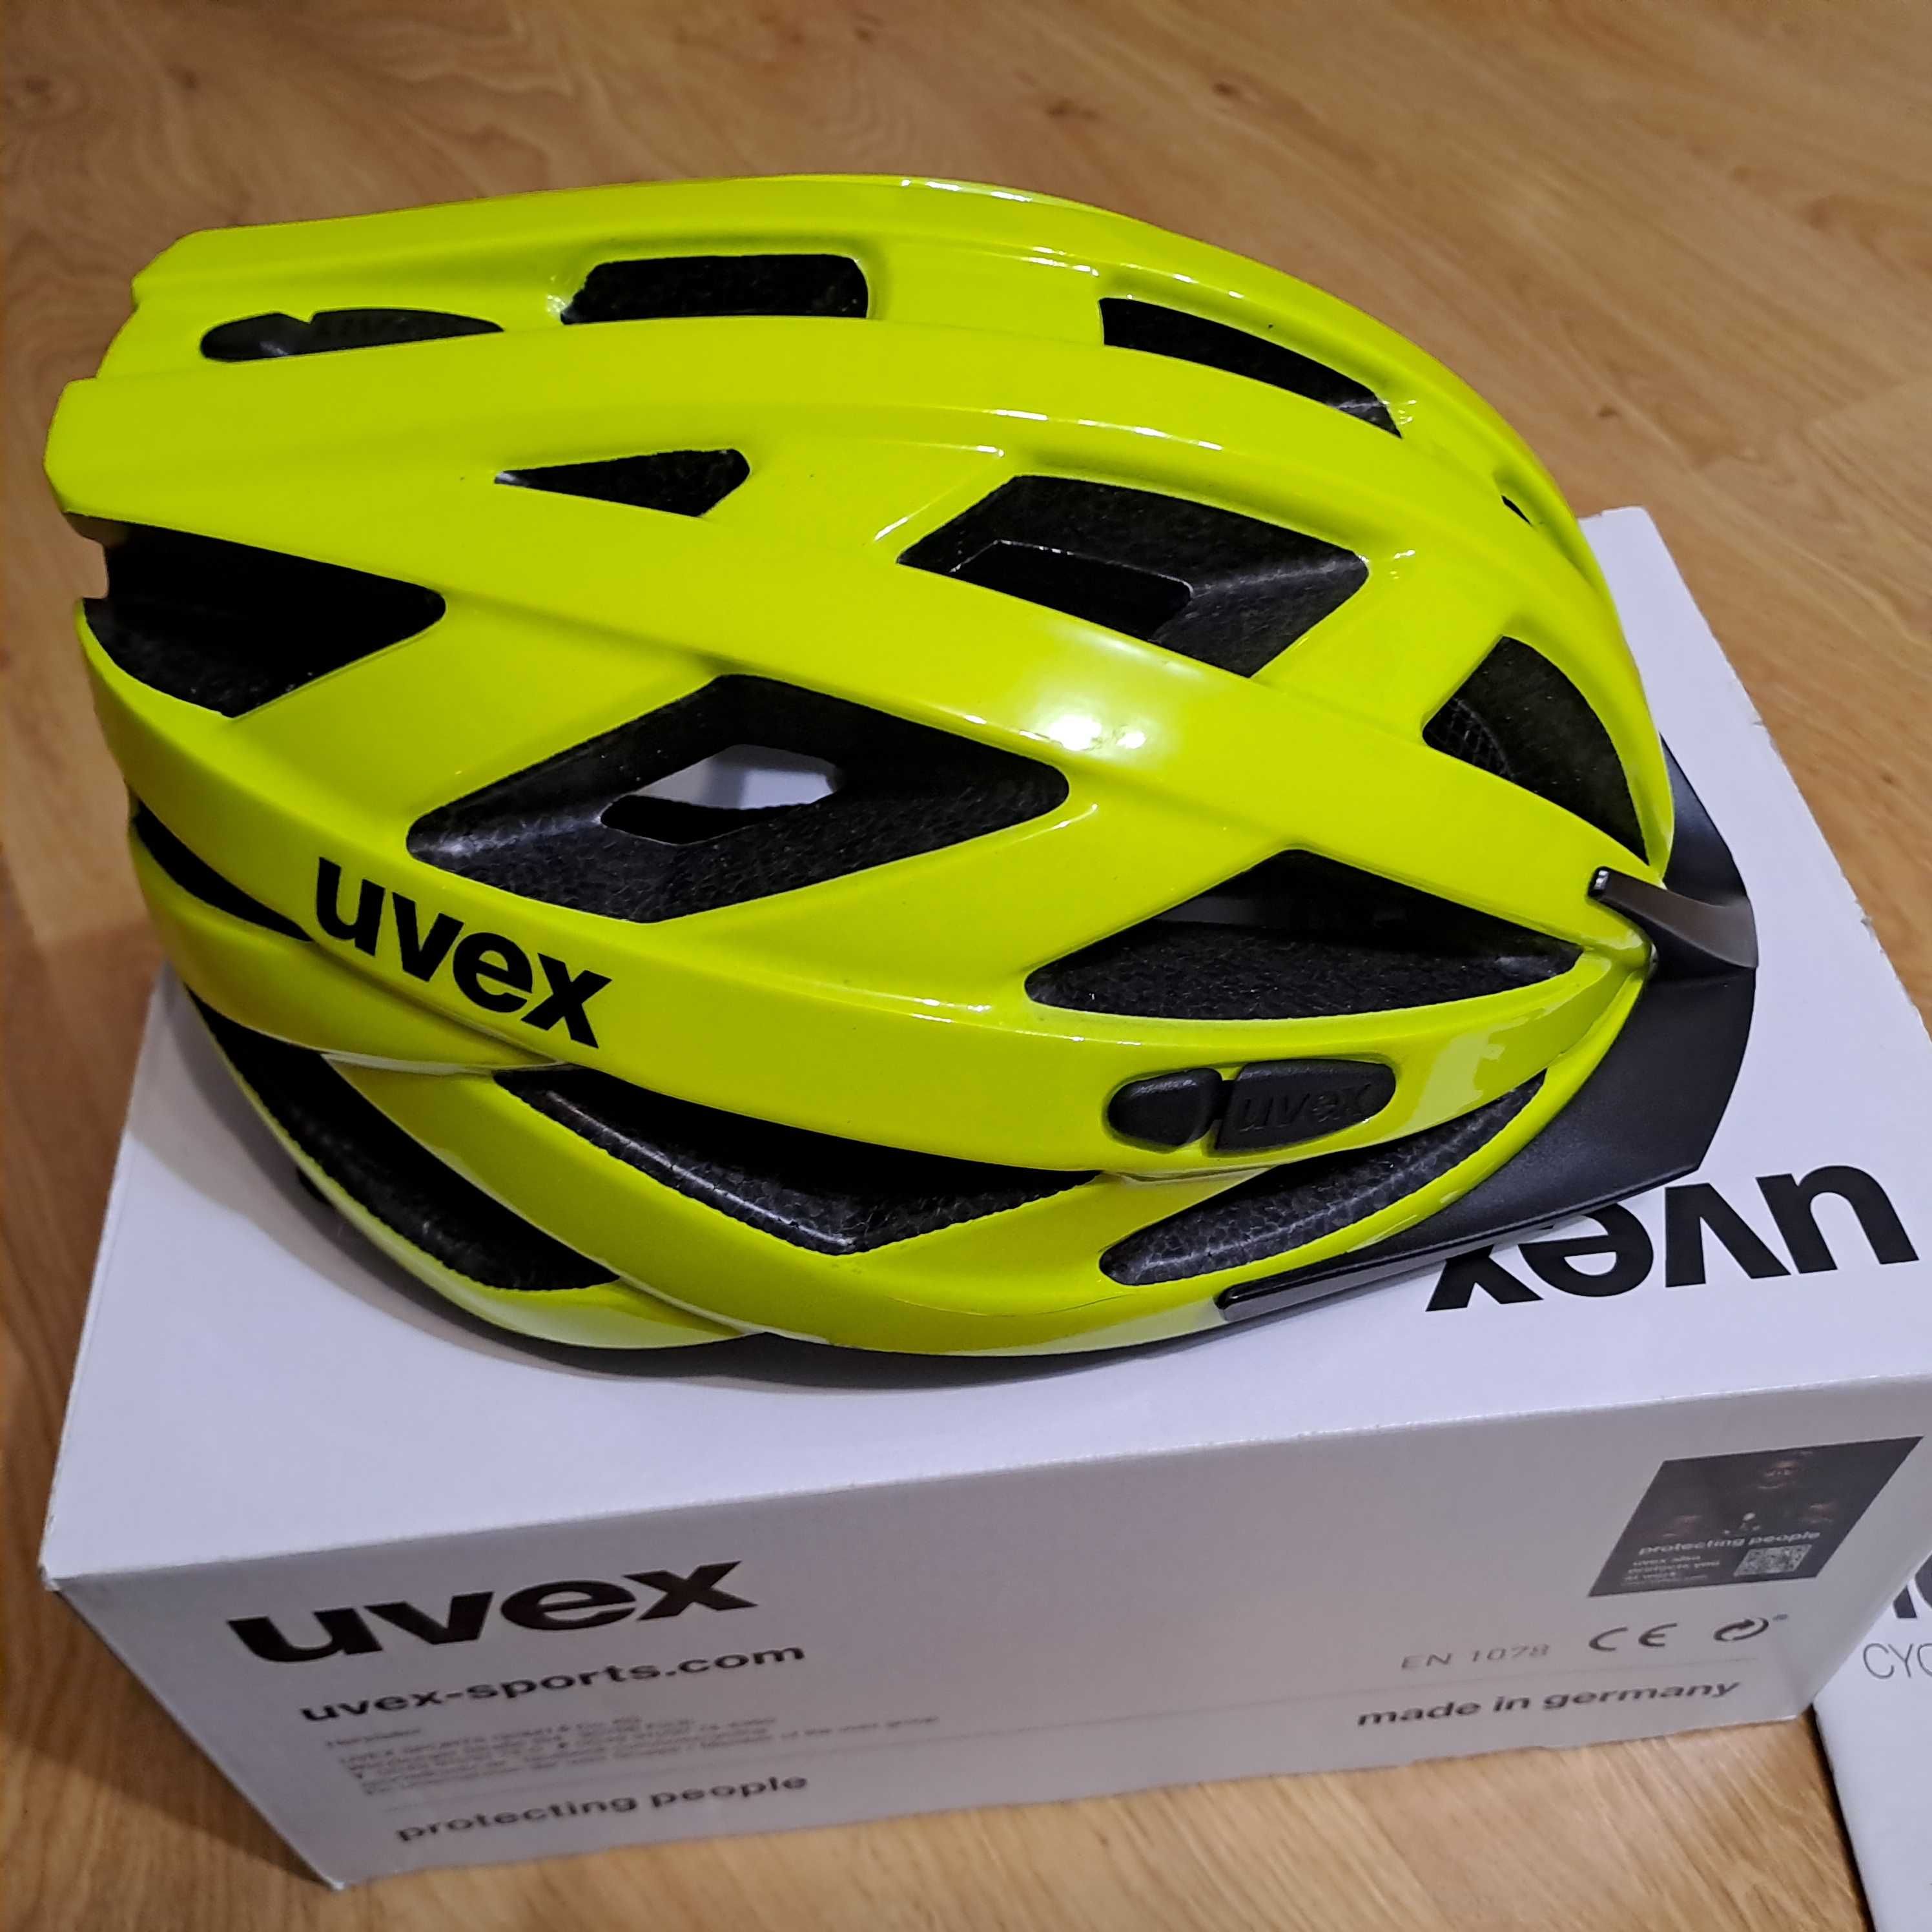 Kask rowerowy UVEX I-vo 3D / stan nowy, rozmiar 56-60 cm